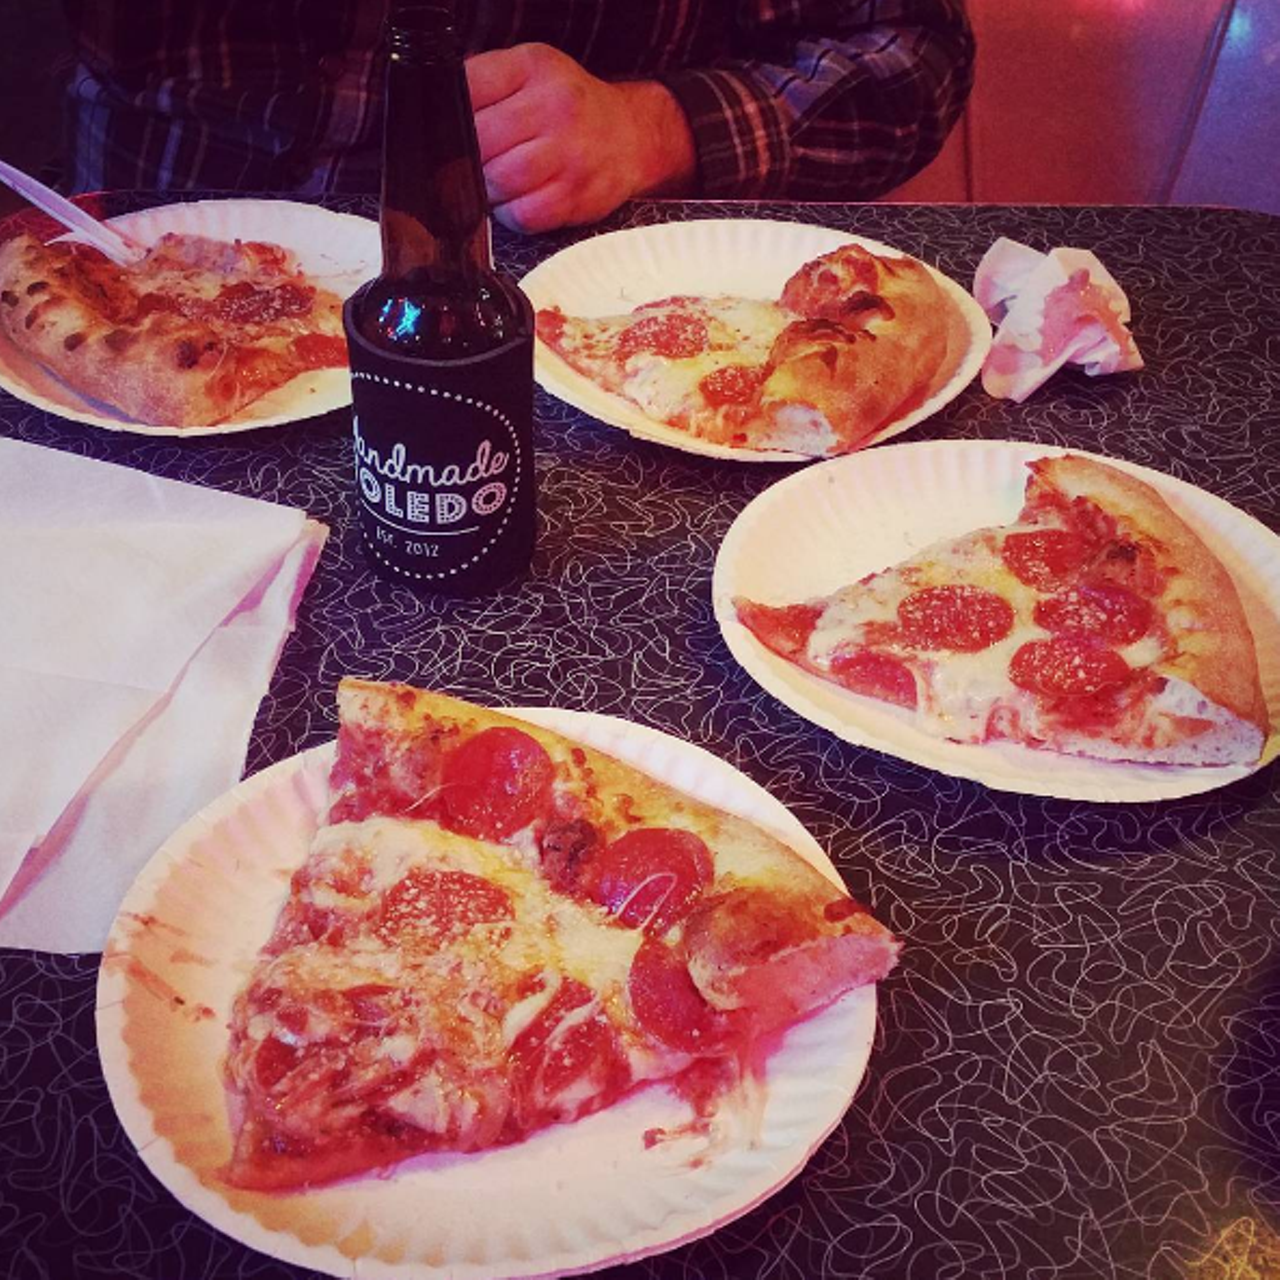 Sgt. Pepperoni's Pizzeria & Deli
Photo via @bettyfloored